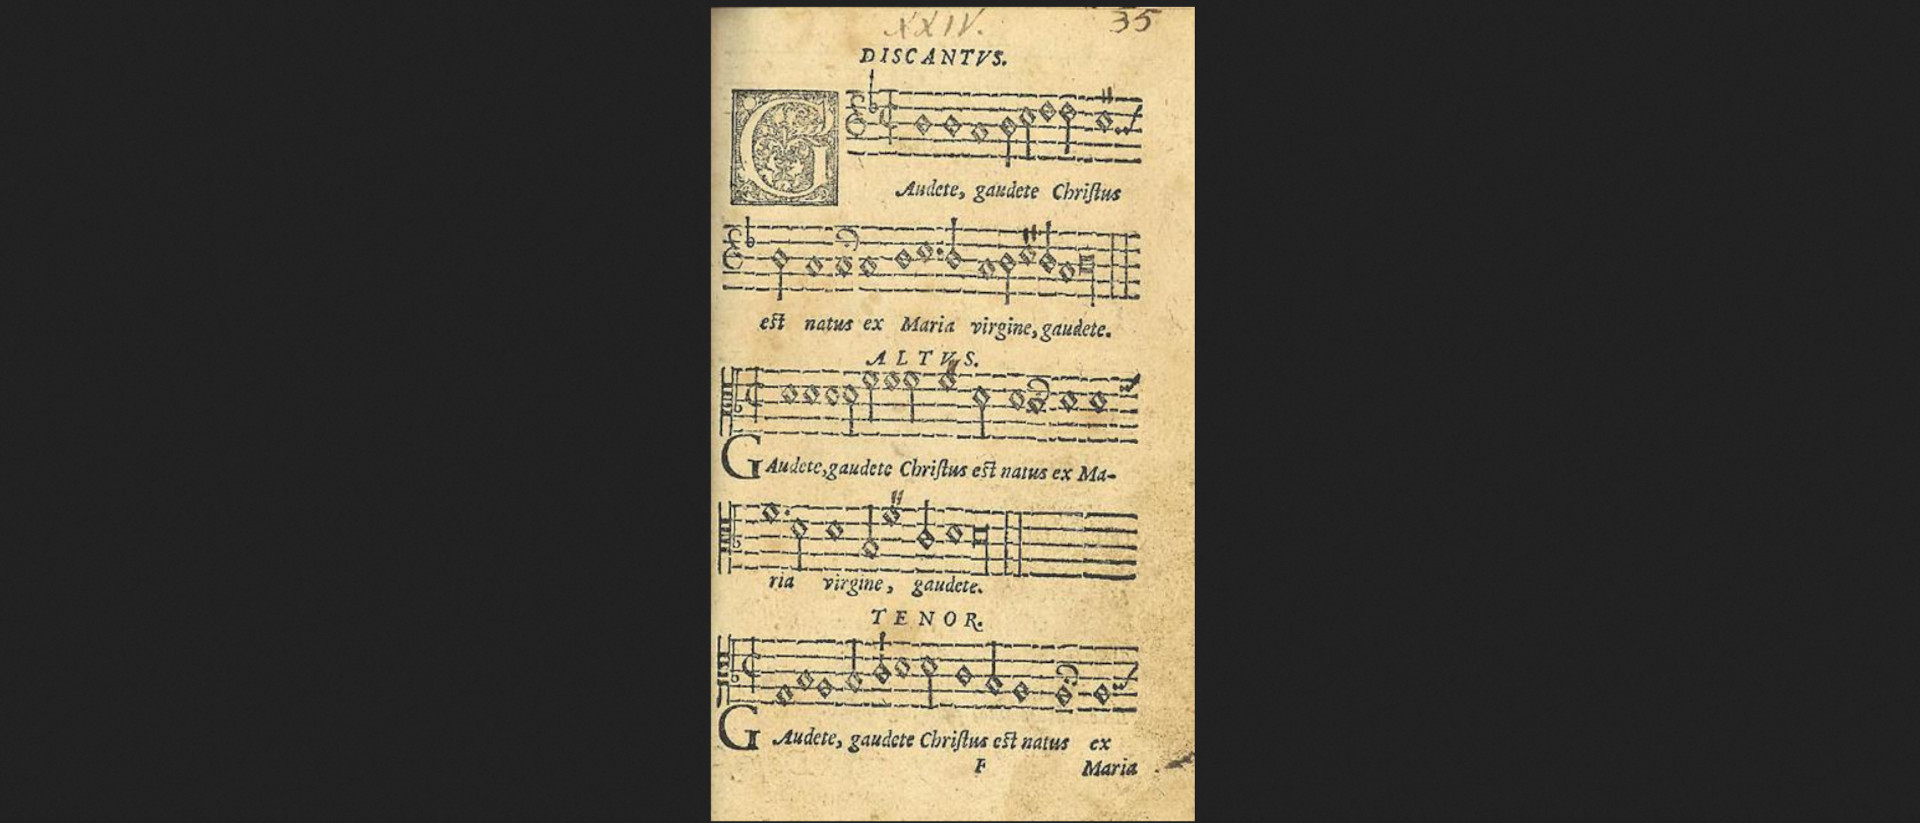 Gaudete: "Freut euch!" - Weihnachtslied aus einer Liedersammlung von 1582.